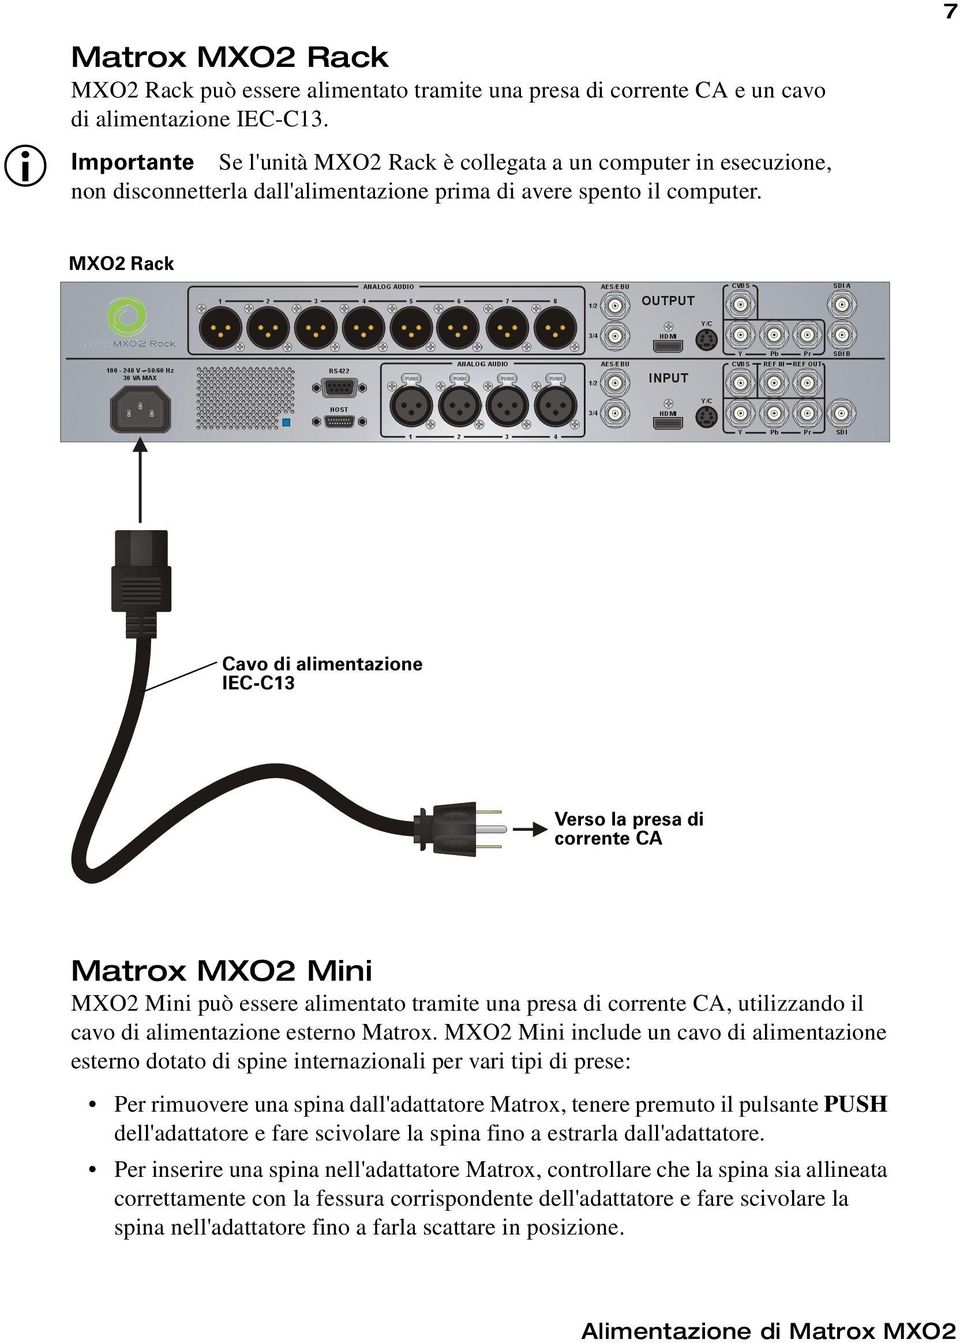 MXO2 Rack Cavo di alimentazione IEC-C13 Verso la presa di corrente CA Matrox MXO2 Mini MXO2 Mini può essere alimentato tramite una presa di corrente CA, utilizzando il cavo di alimentazione esterno